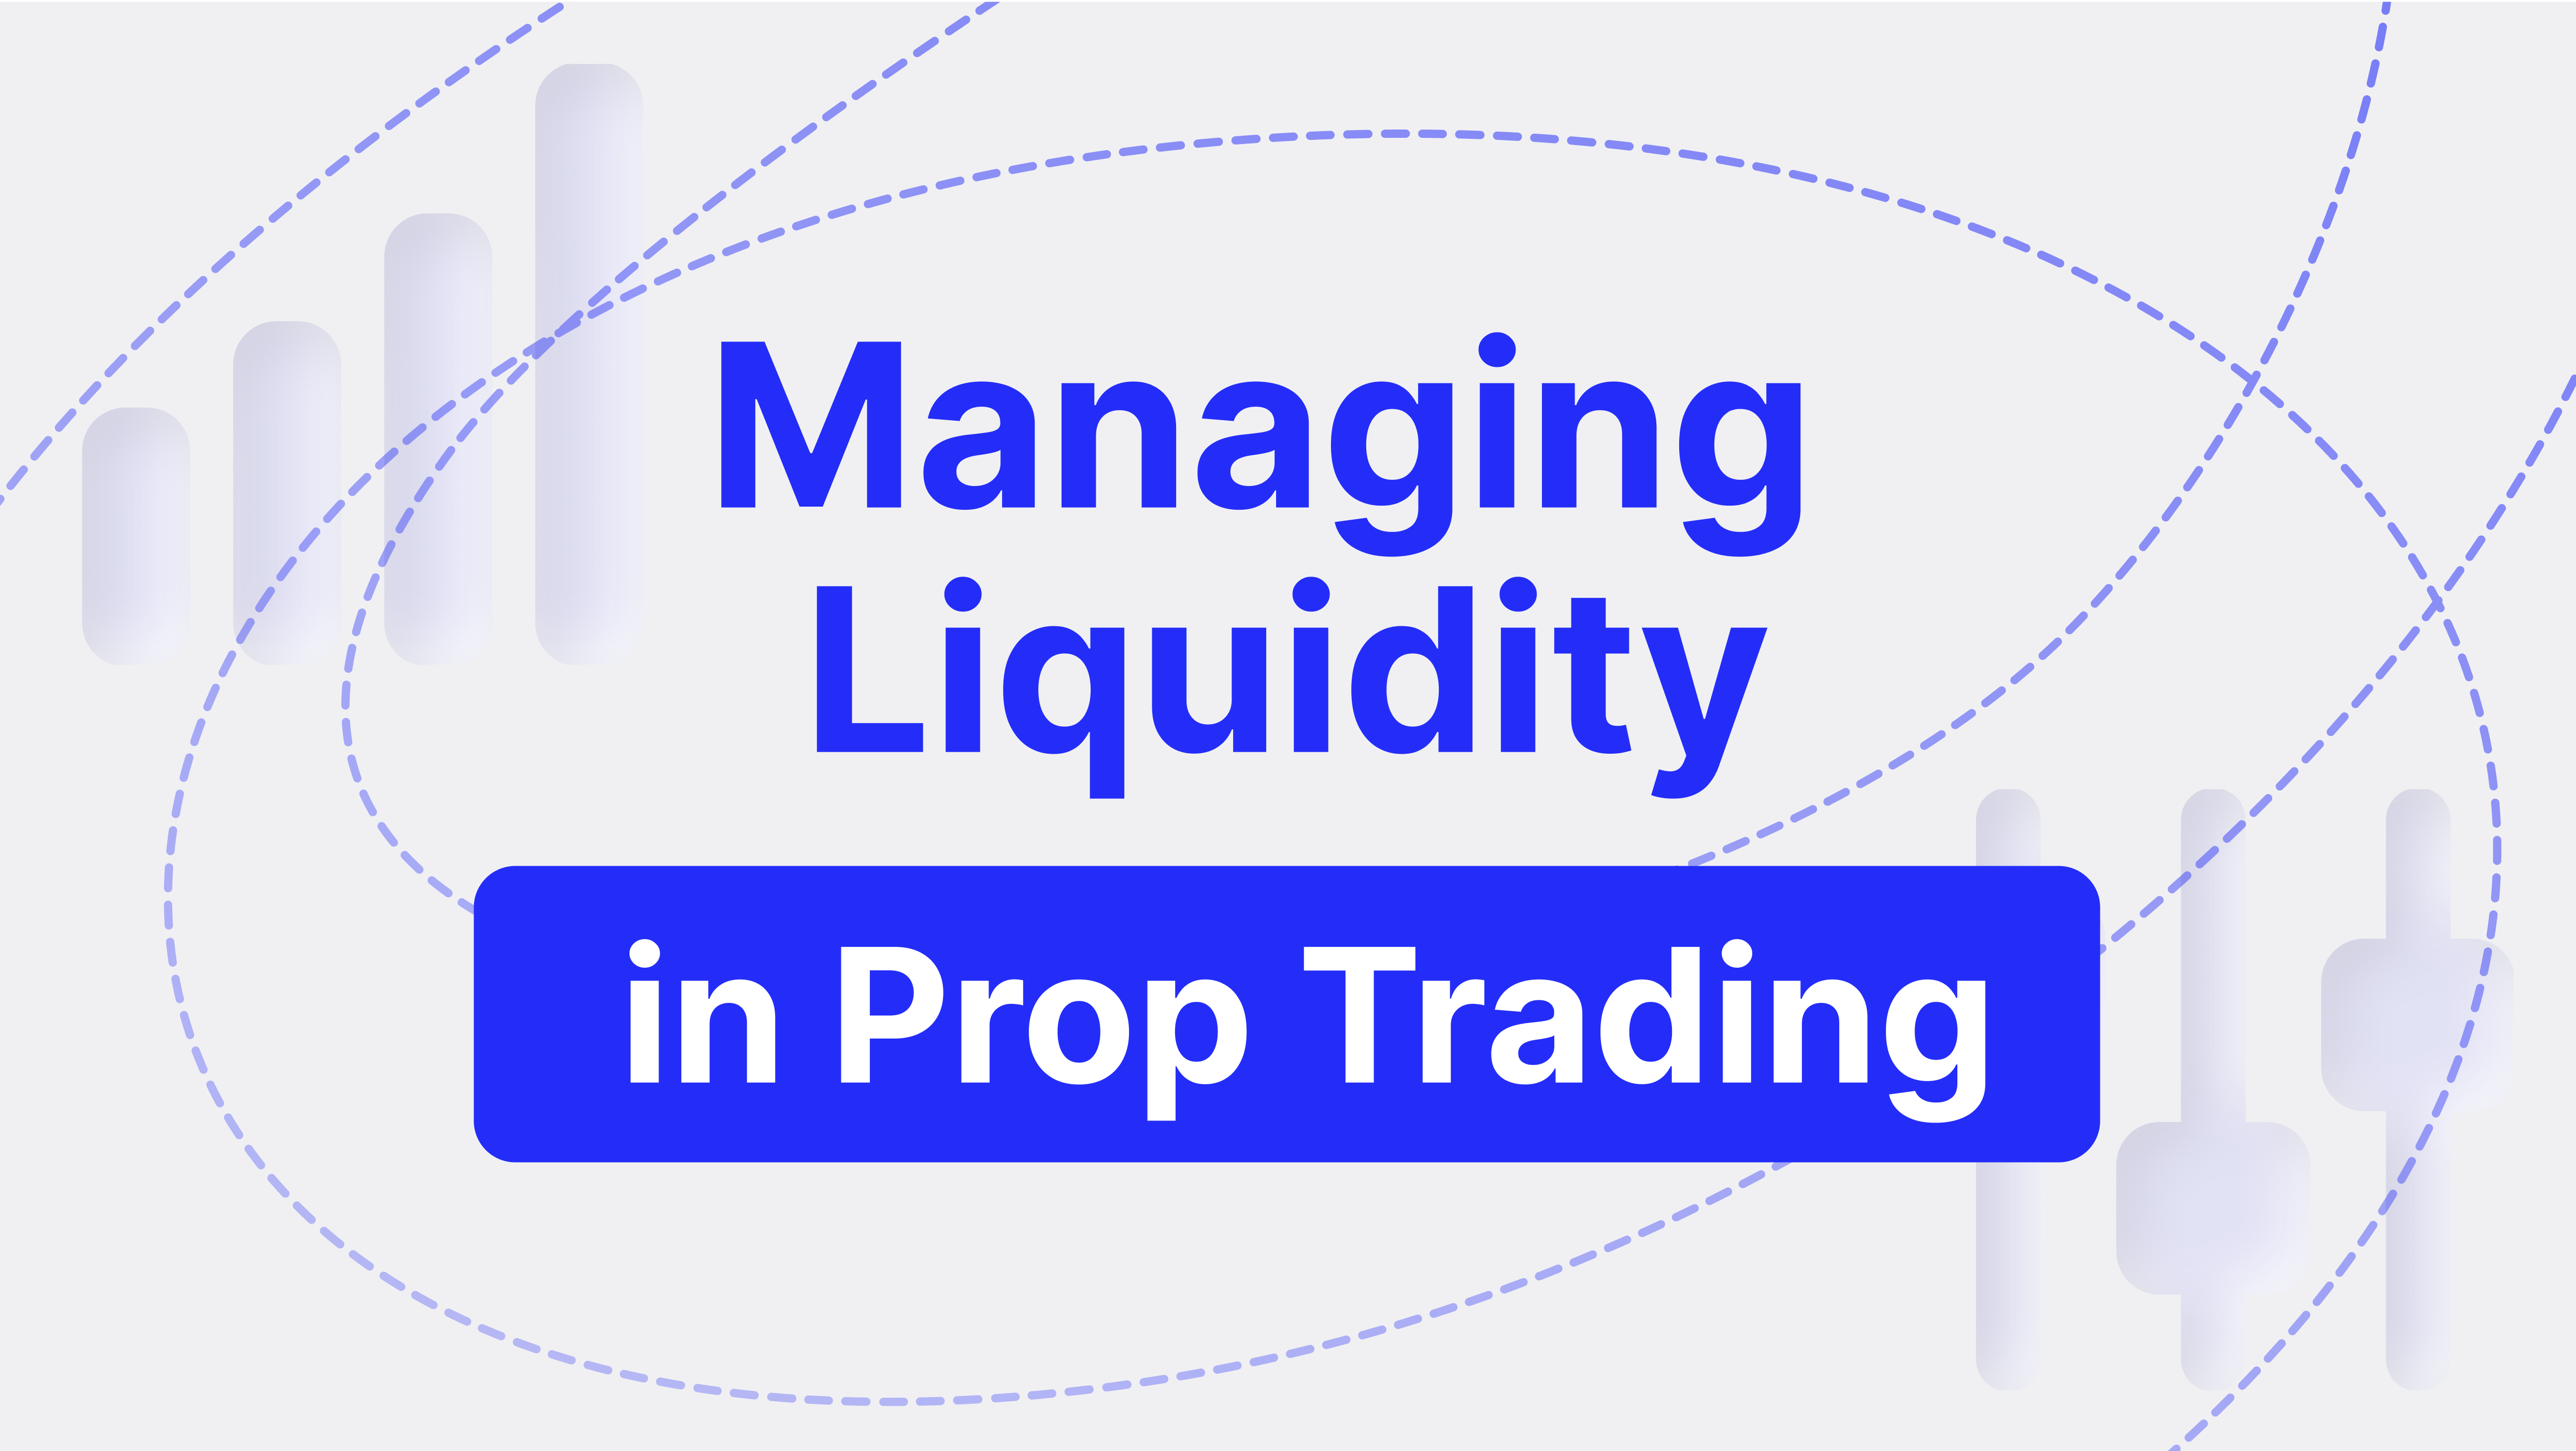 Managing Liquidity in Prop Trading